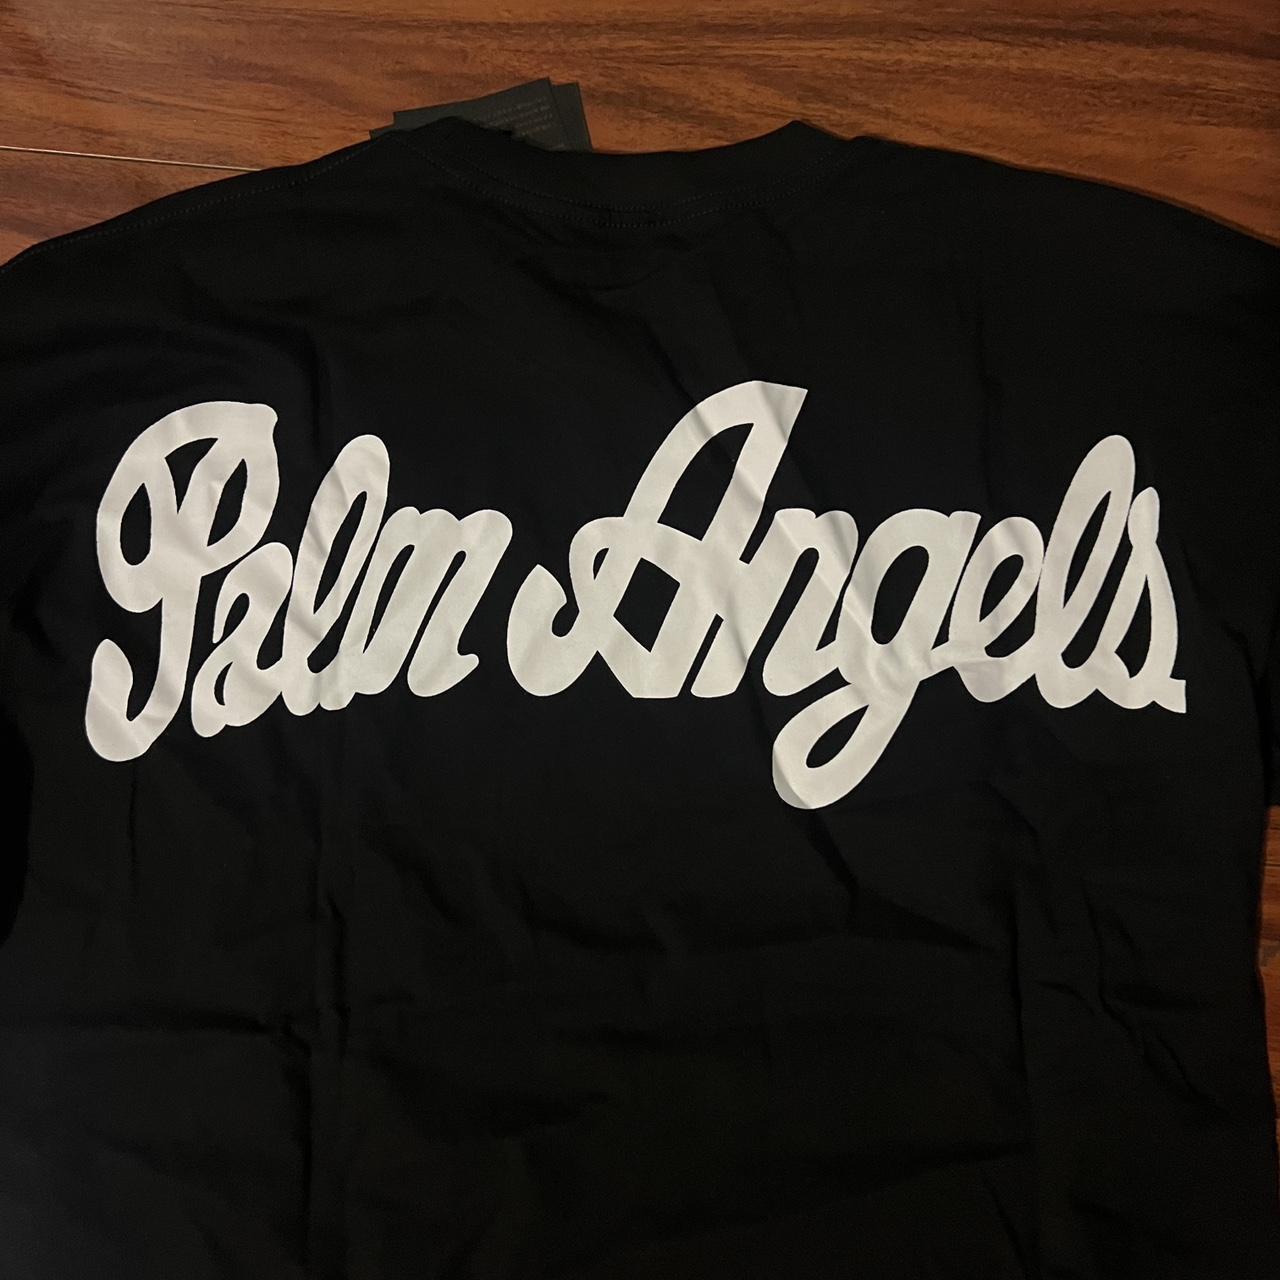 Palm angels miami logo tshirt - size small Tshirt - Depop